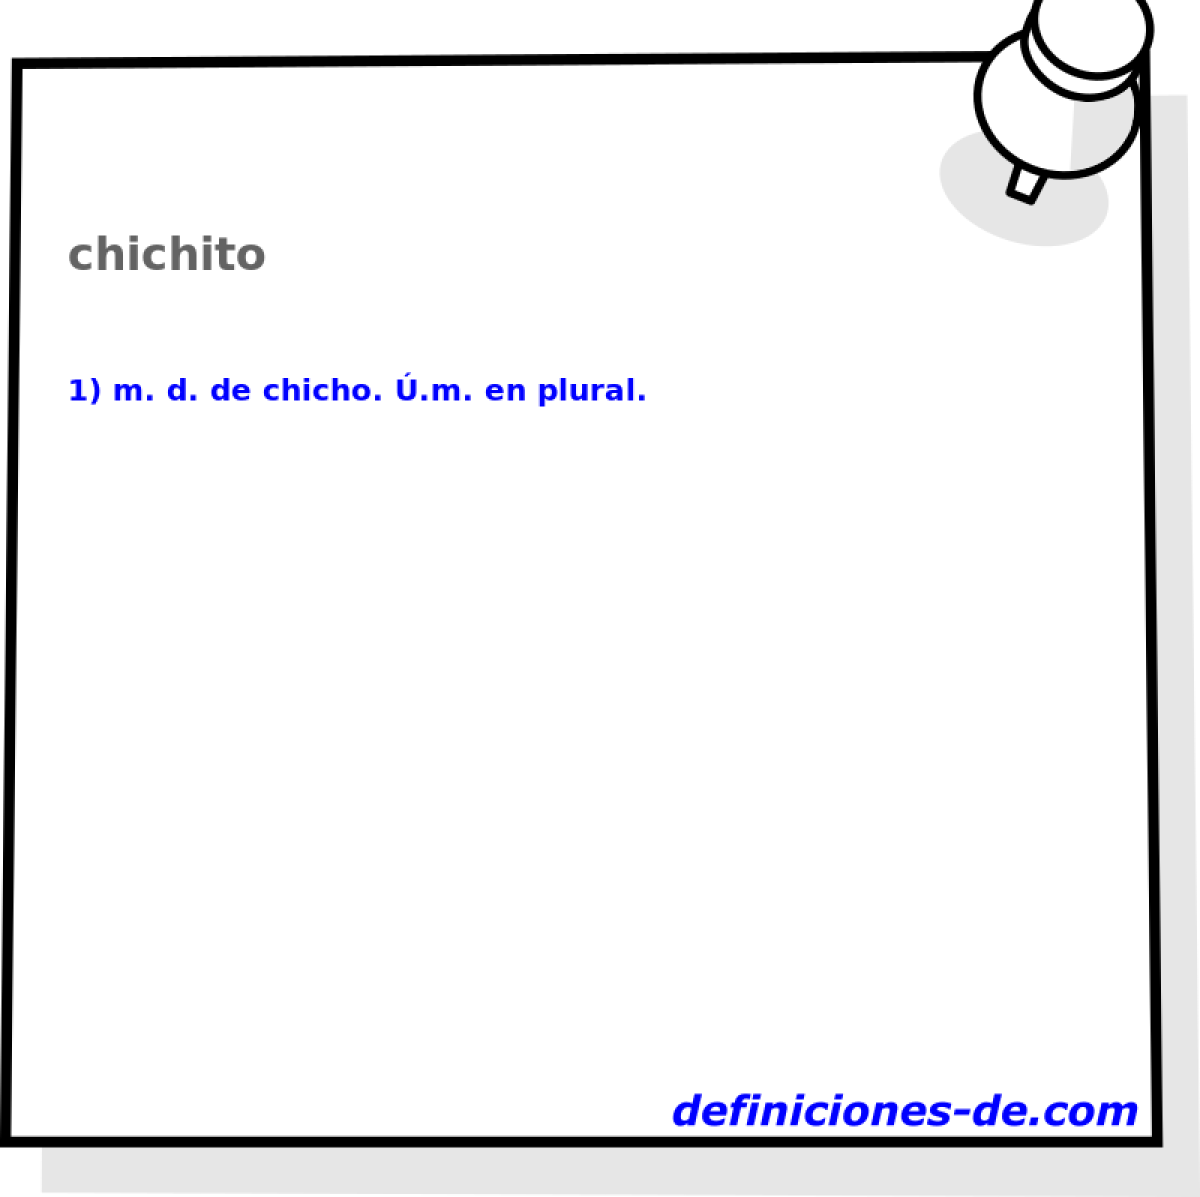 chichito 